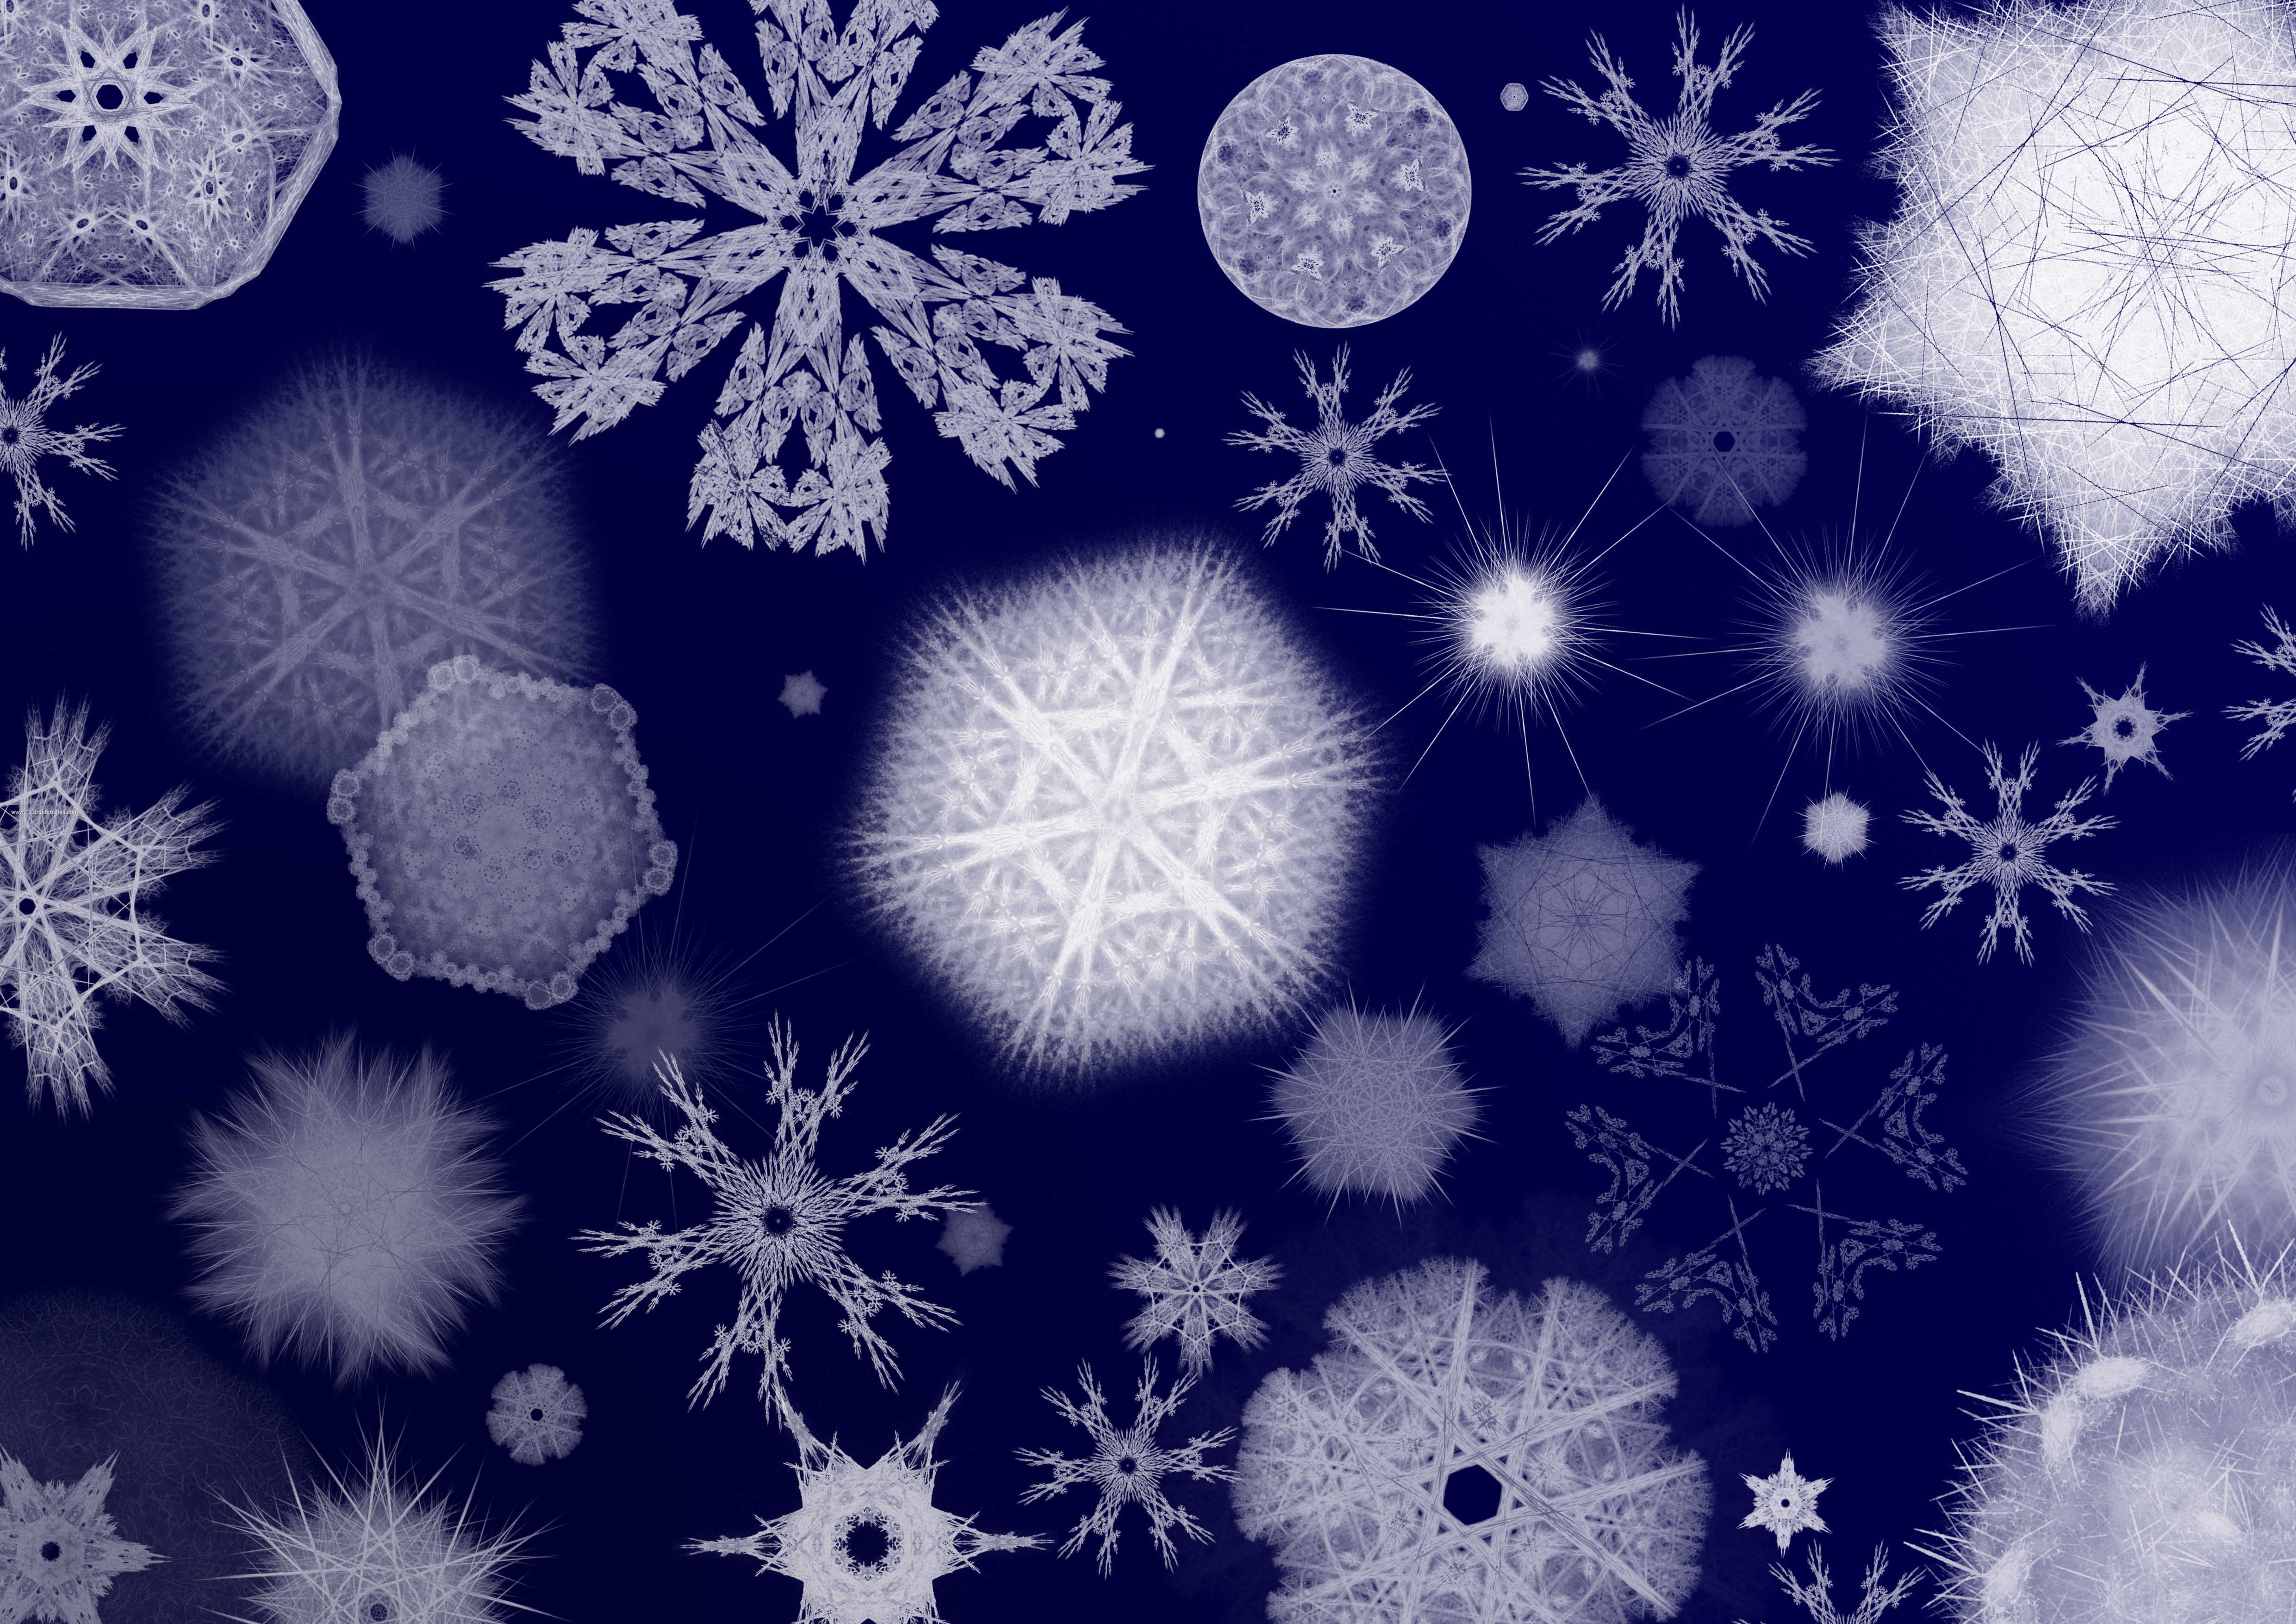 Snowflake Free Photoshop Brush Download. 